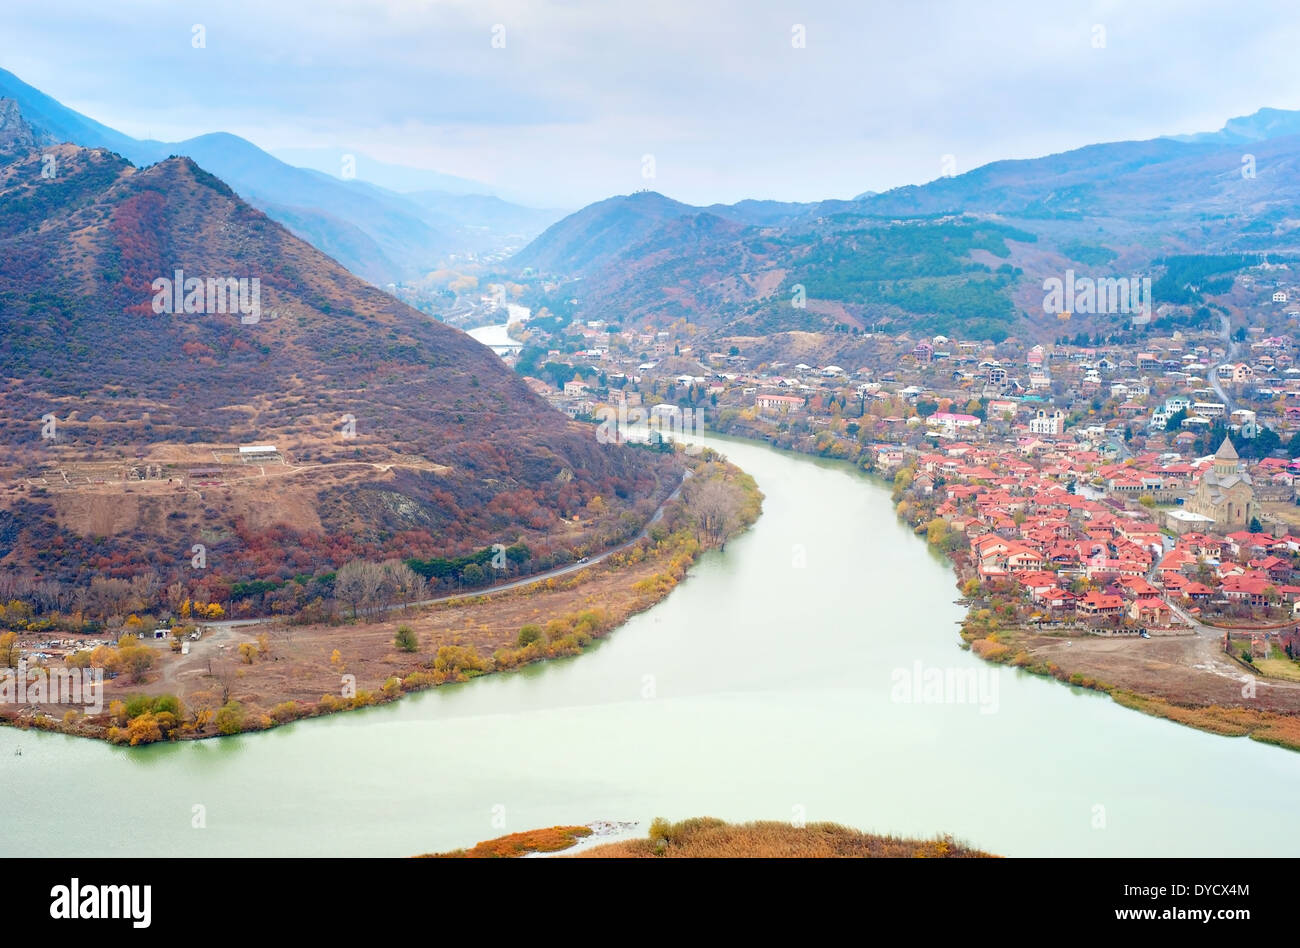 Old georgian town Mtskheta and Caucasus mountain range, Georgia Stock Photo